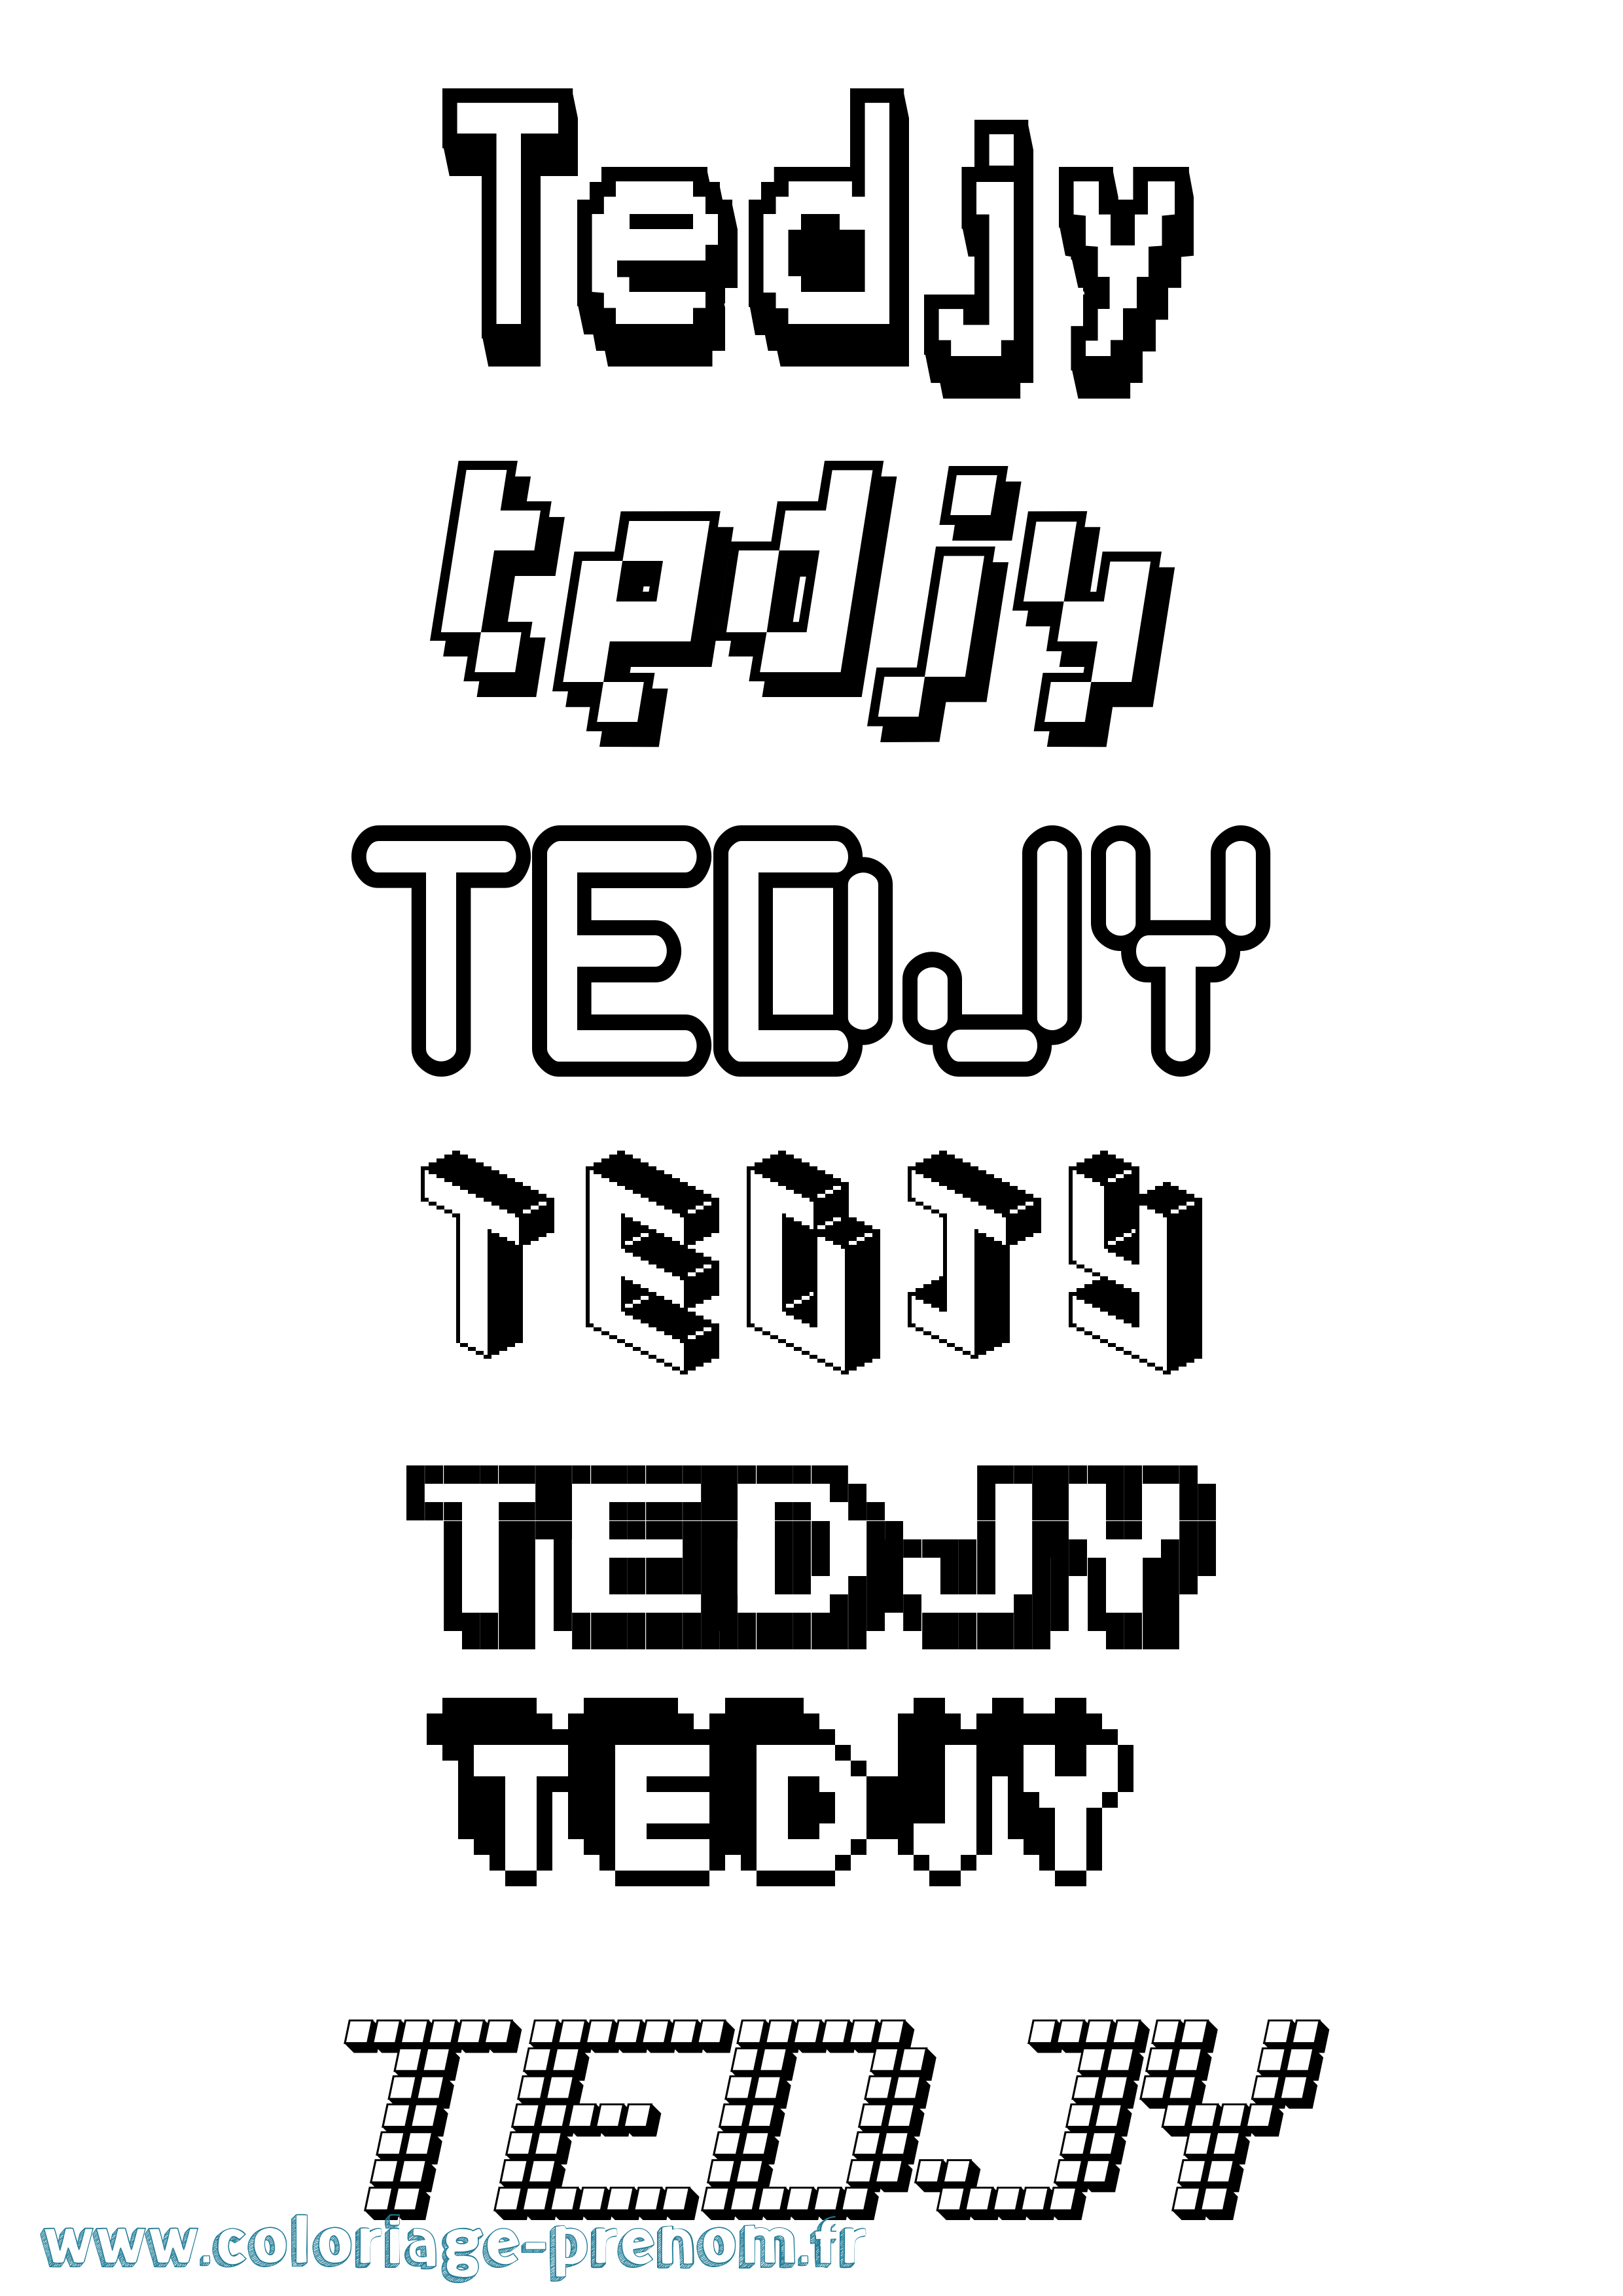 Coloriage prénom Tedjy Pixel